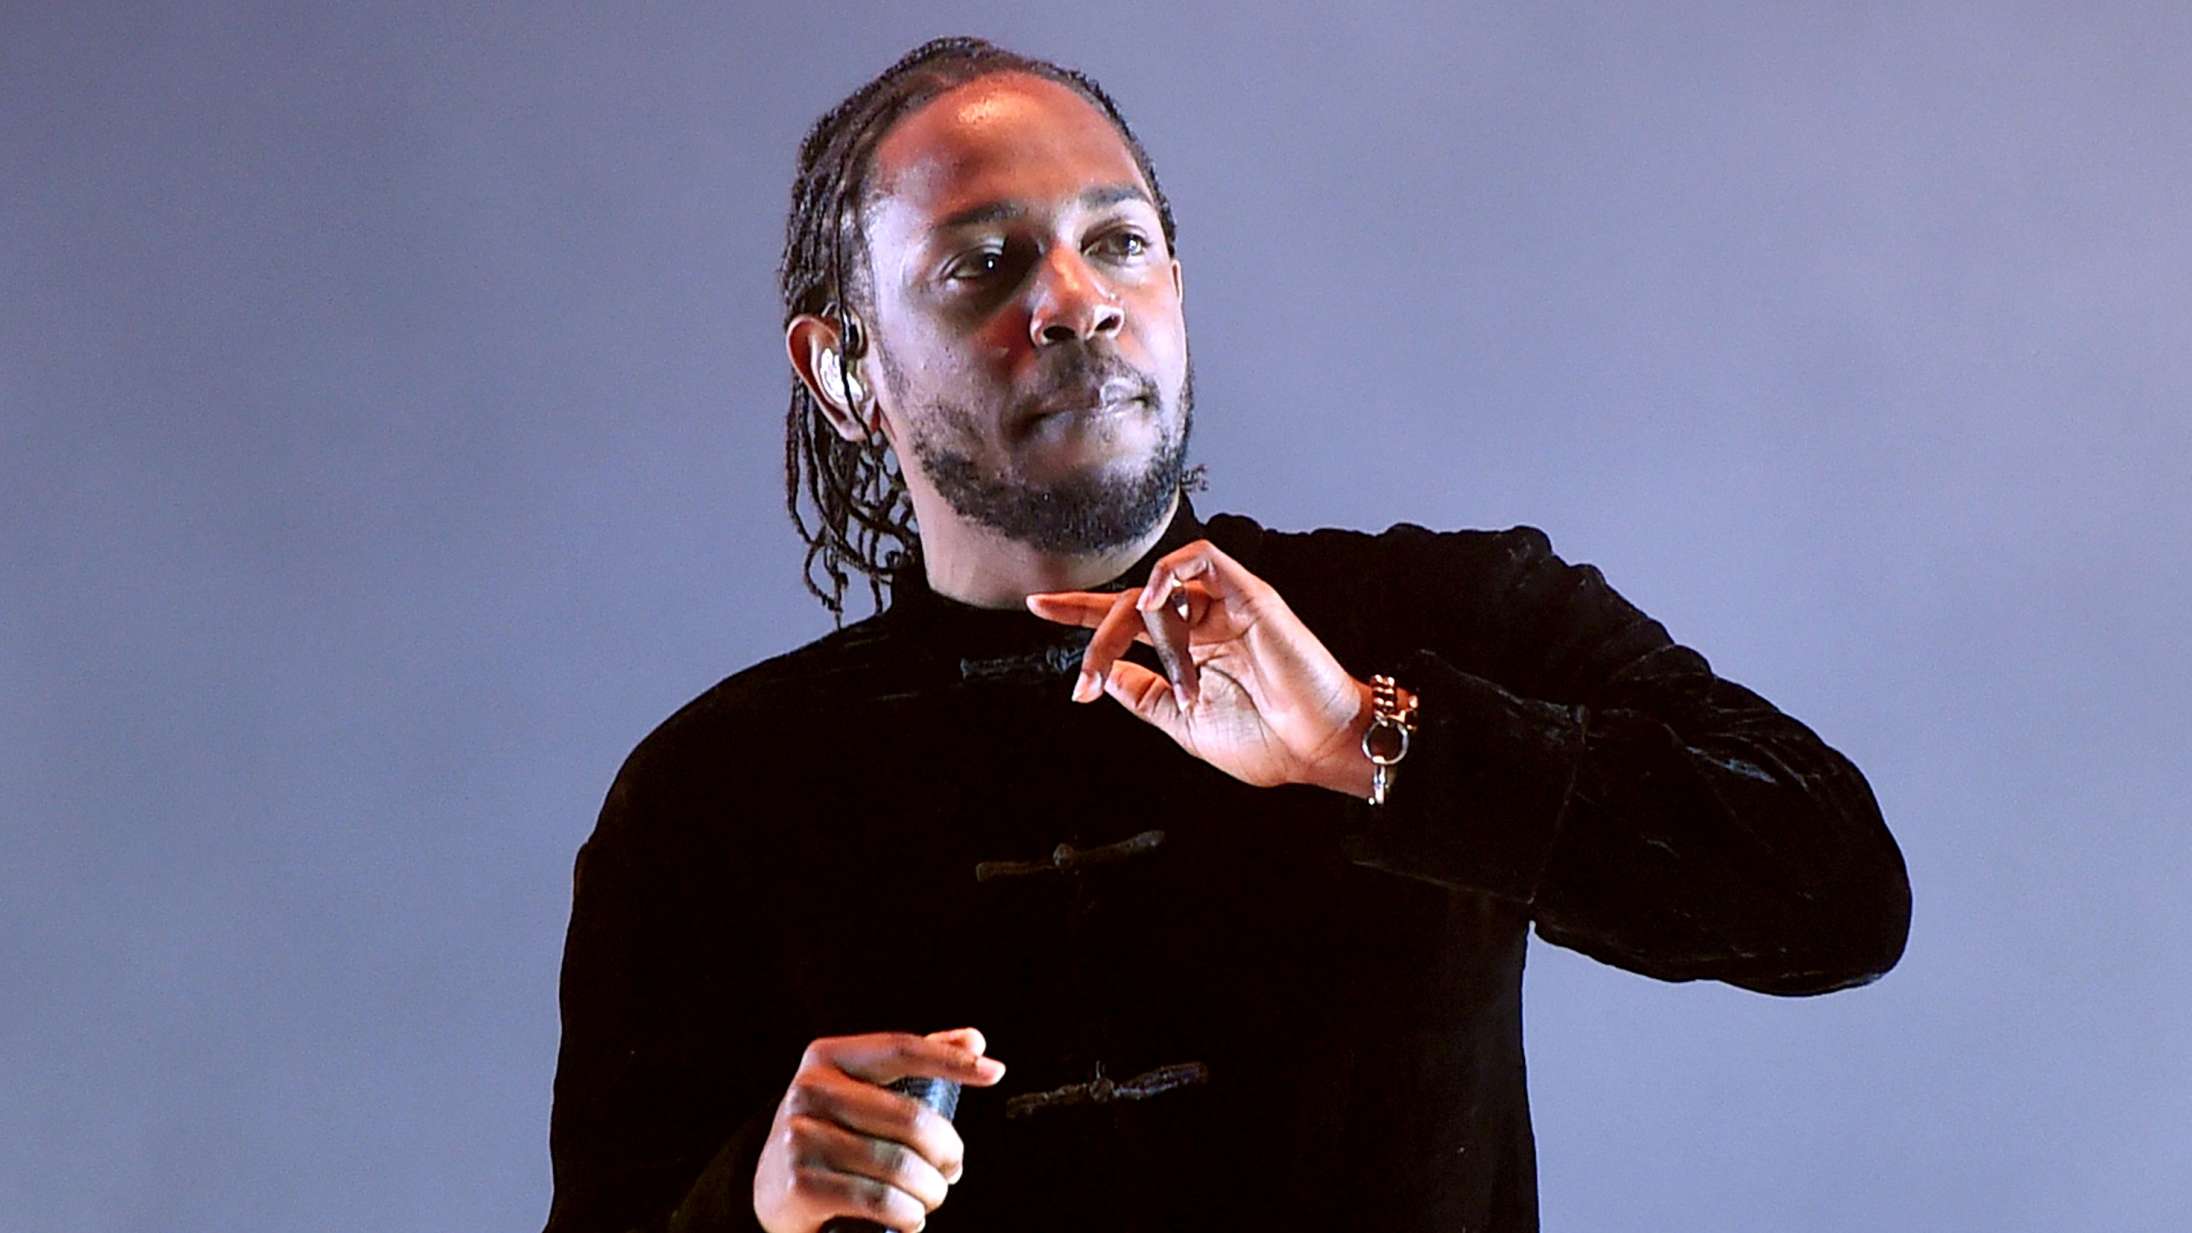 Det siger Kendrick Lamars egne yndlingsvers om Kendrick selv – frygt, fokus og historiefortælling